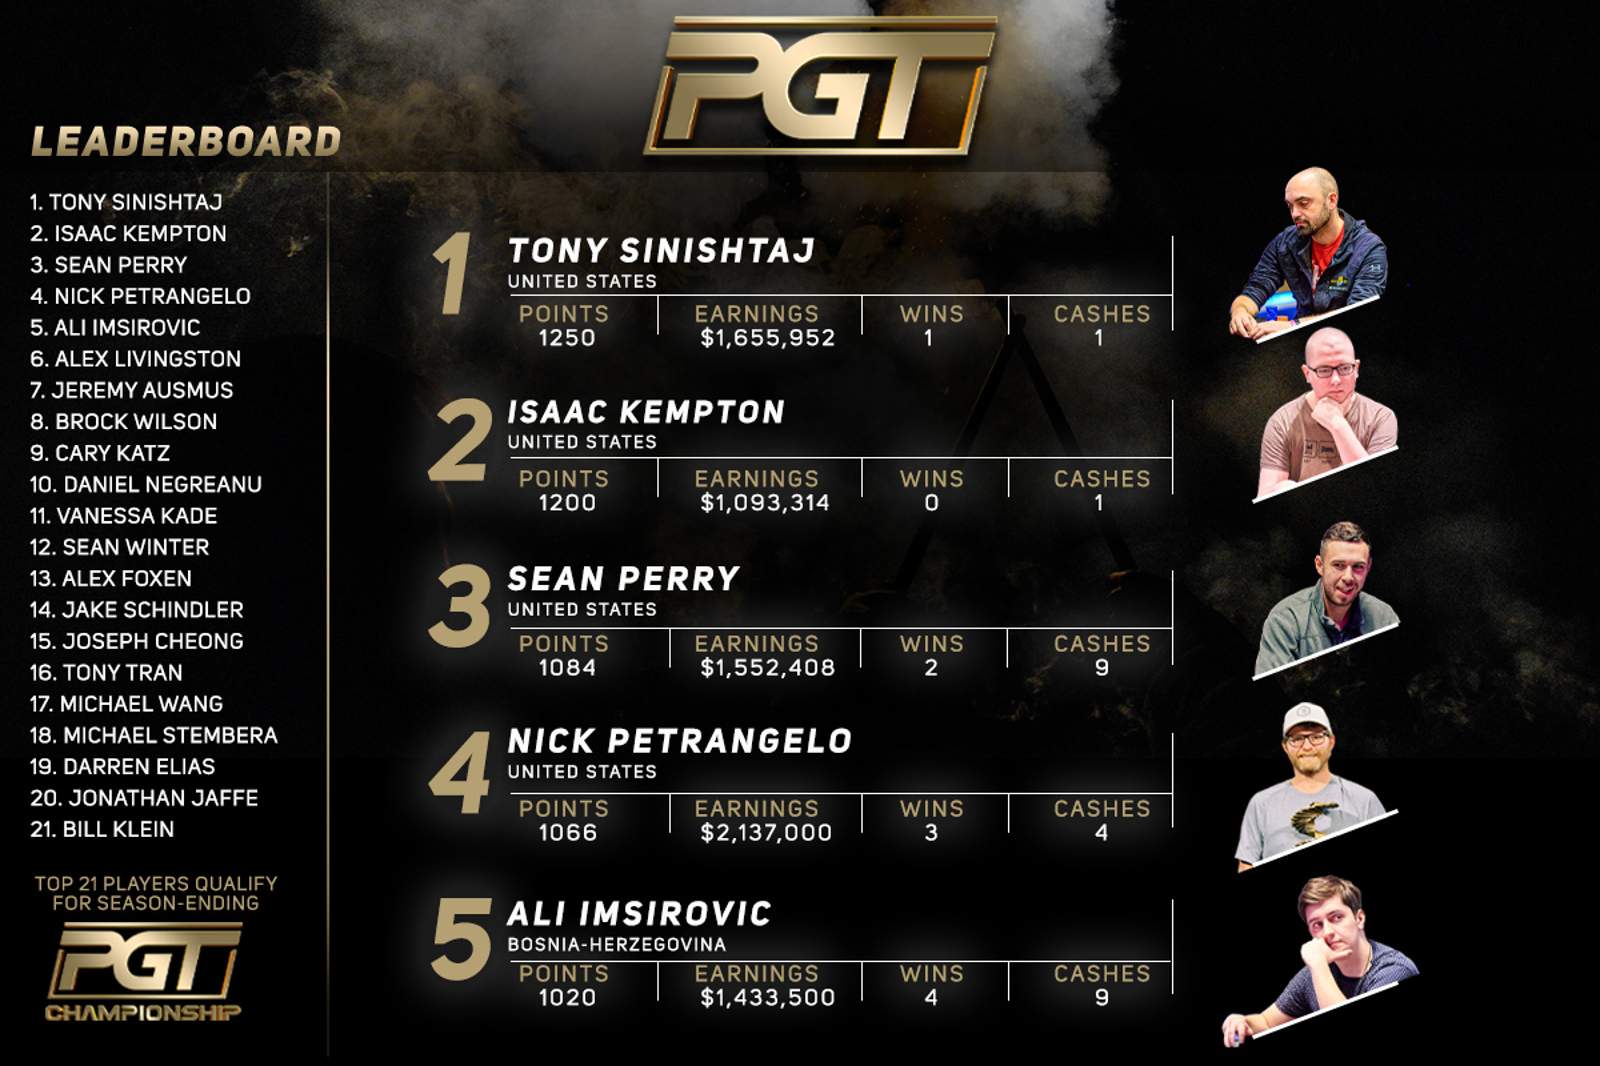 Wynn Millions Champion Tony Sinishtaj Tops PGT Leaderboard